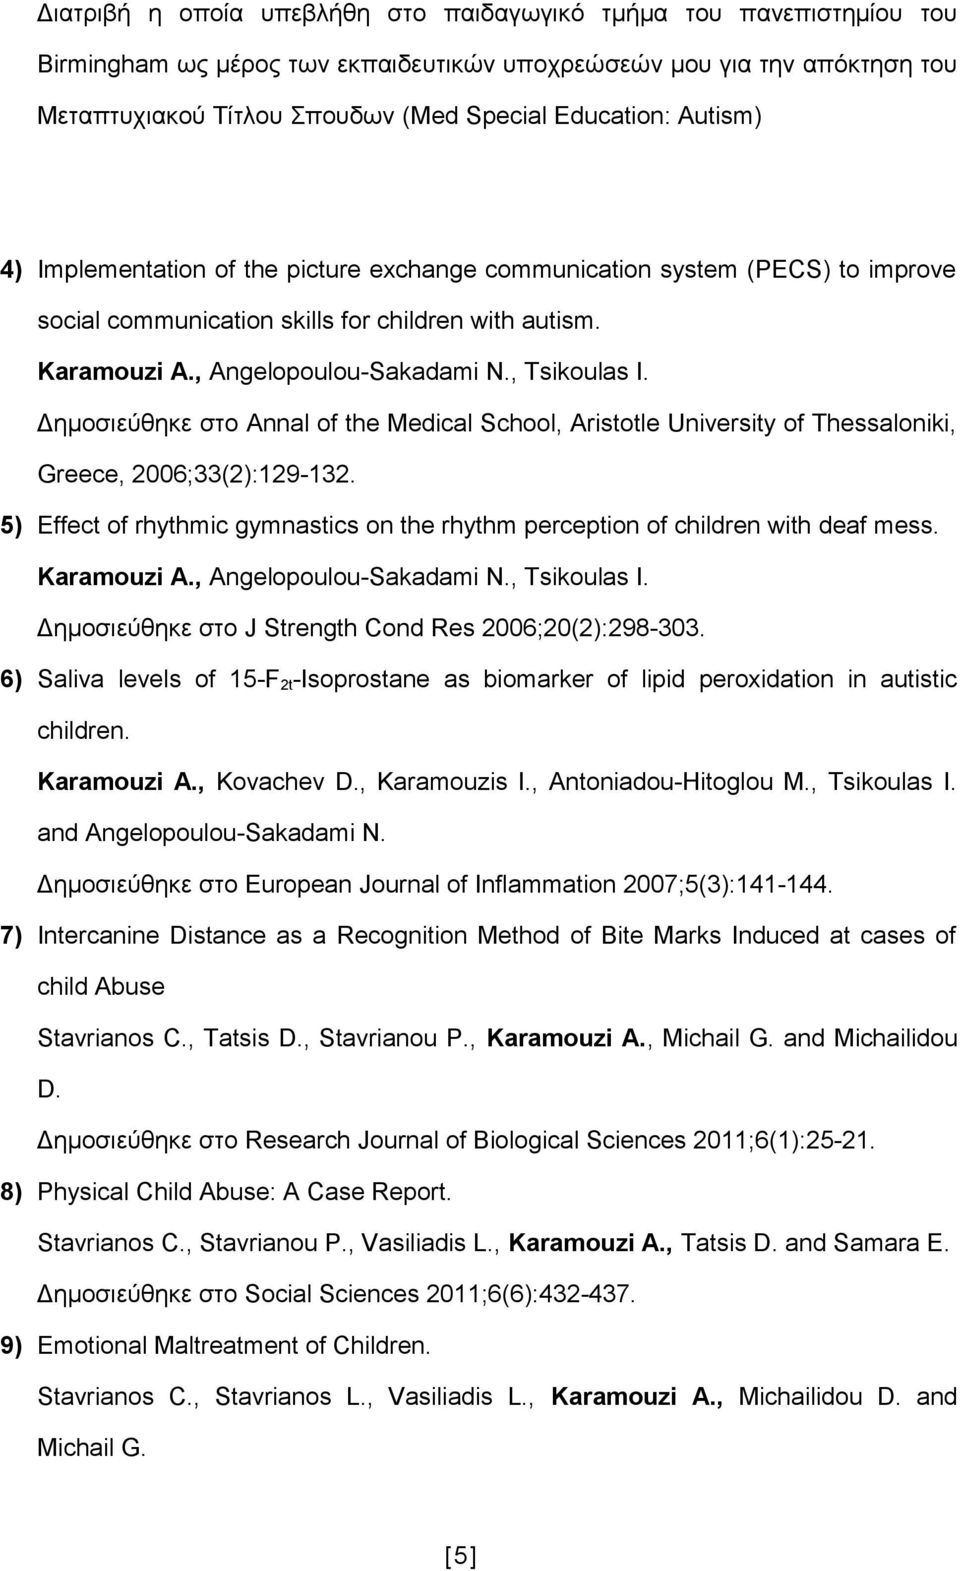 Δημοσιεύθηκε στο Annal of the Medical School, Aristotle University of Thessaloniki, Greece, 2006;33(2):129-132. 5) Effect of rhythmic gymnastics on the rhythm perception of children with deaf mess.